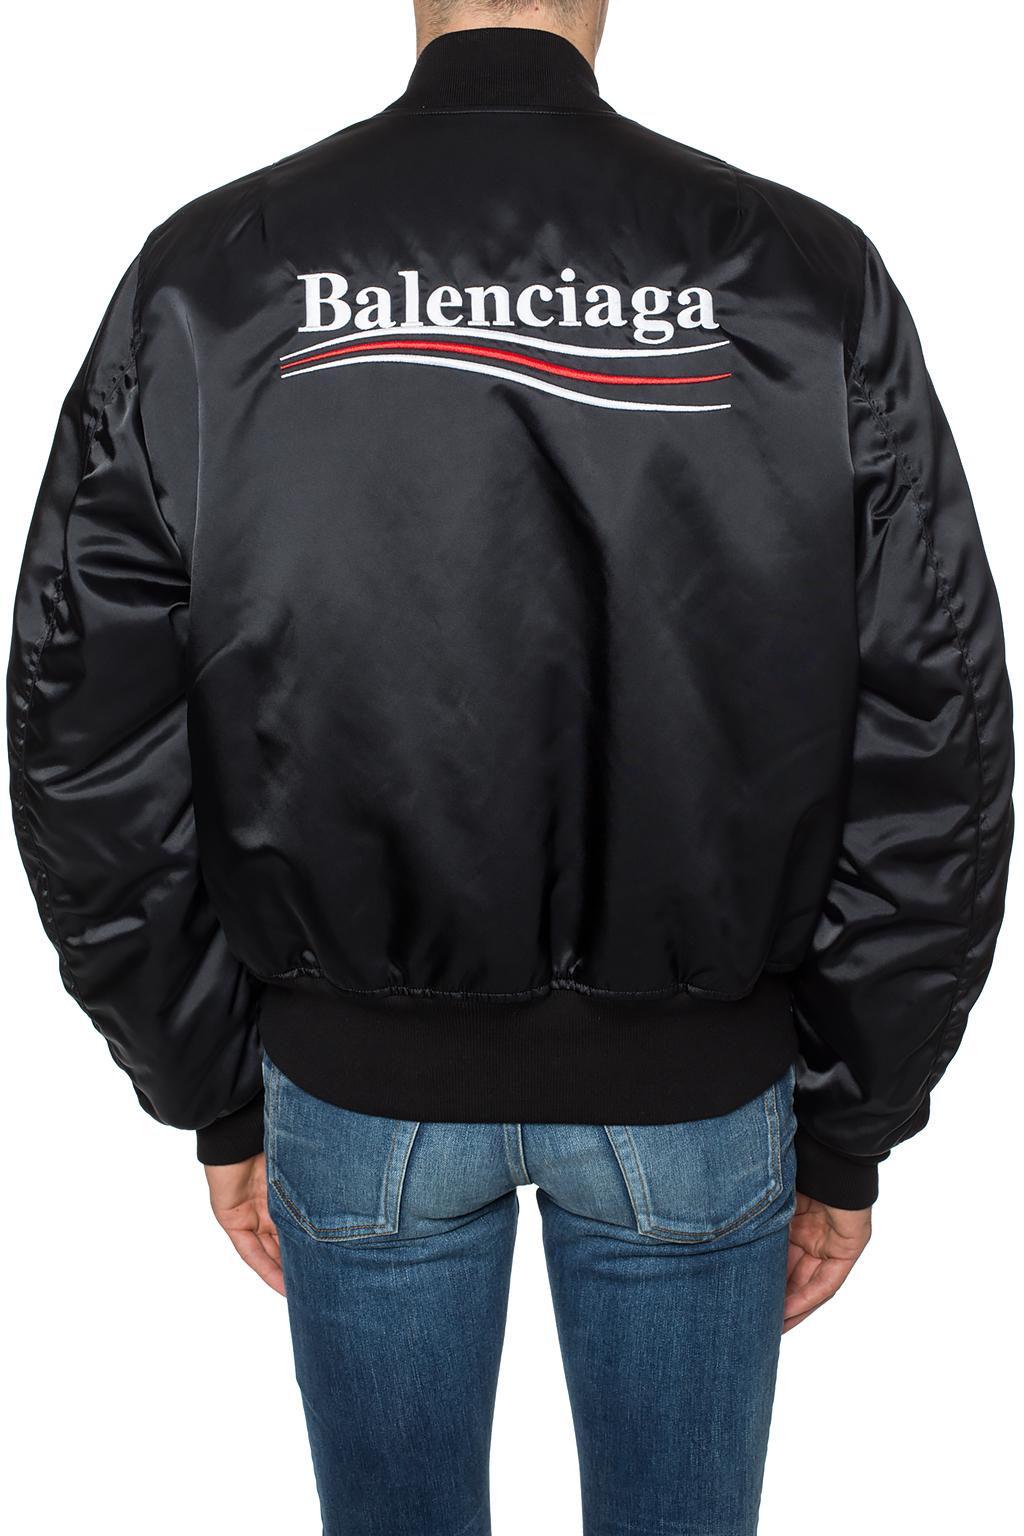 黑色品牌棒球服Balenciaga - Vitkac 中国